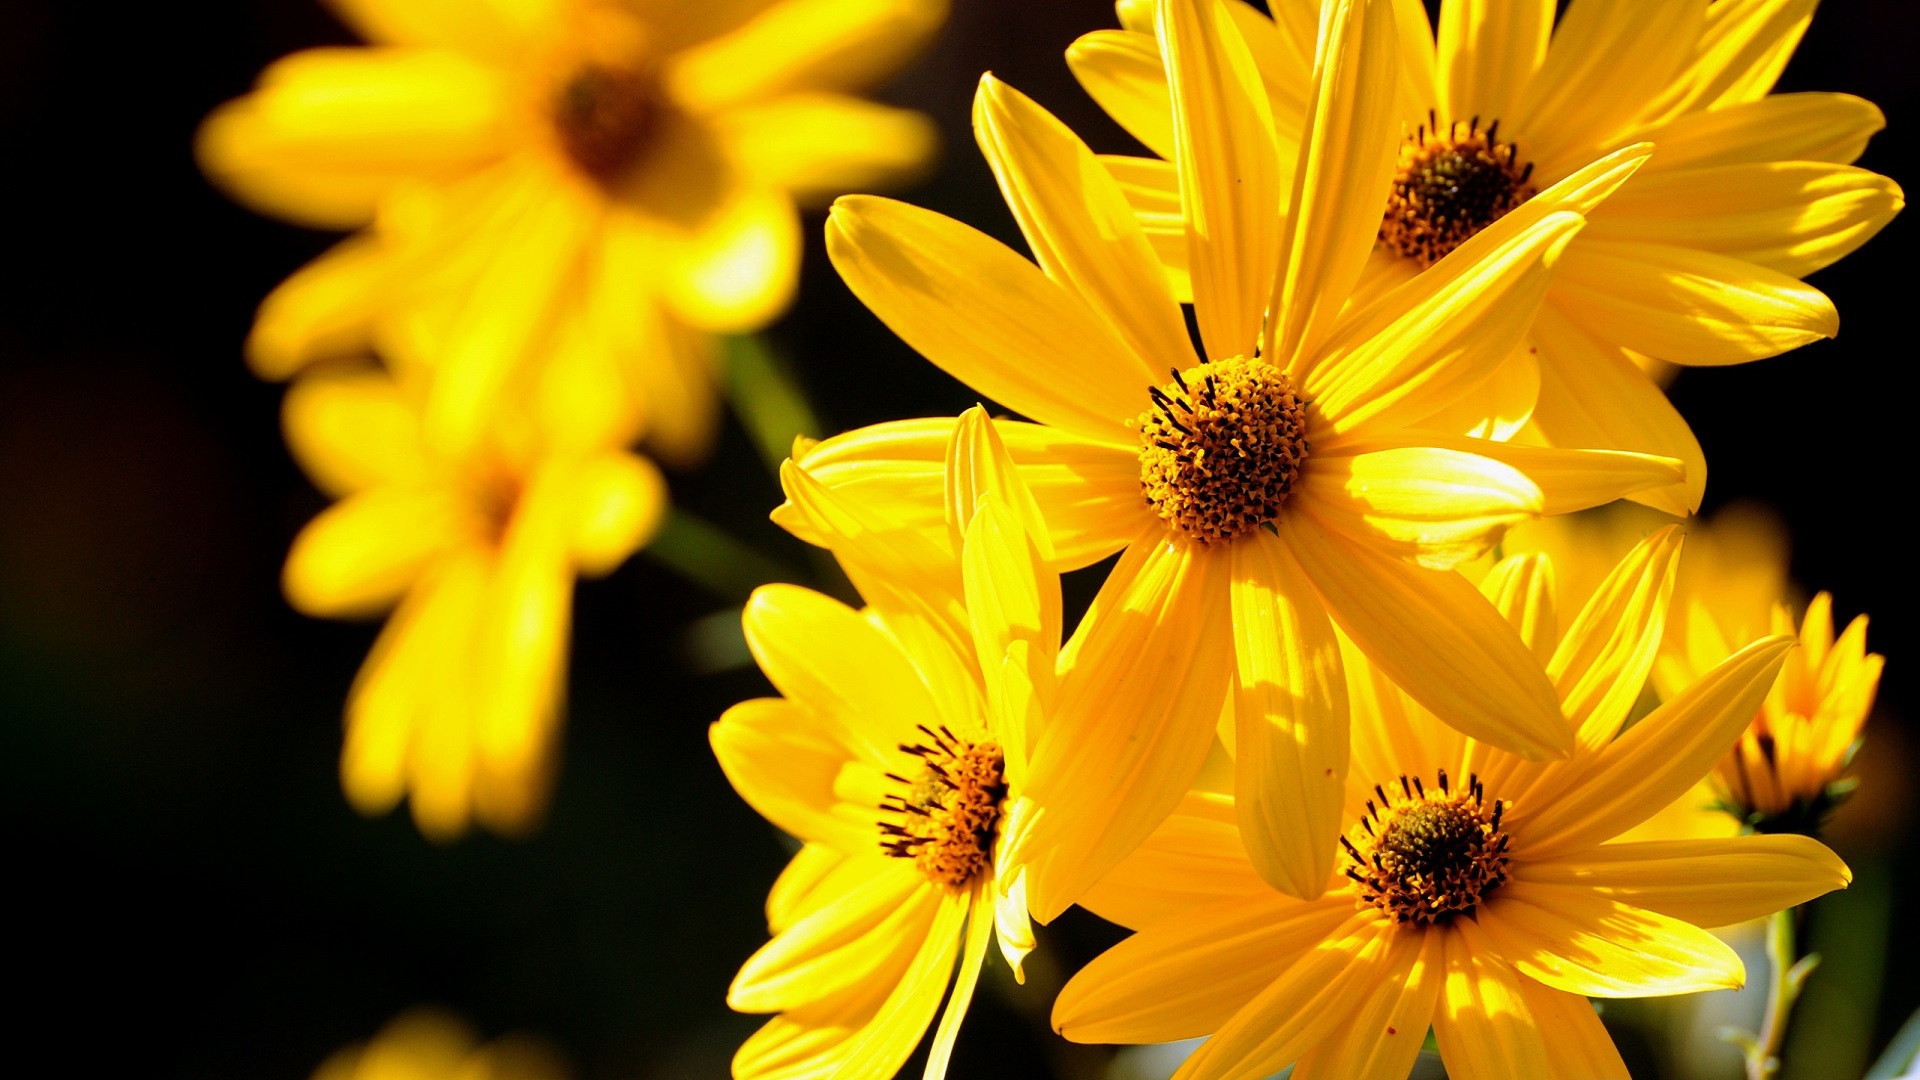  原网址：http://eskipaper.com/images/yellow-flower-up-close-1.jpg 